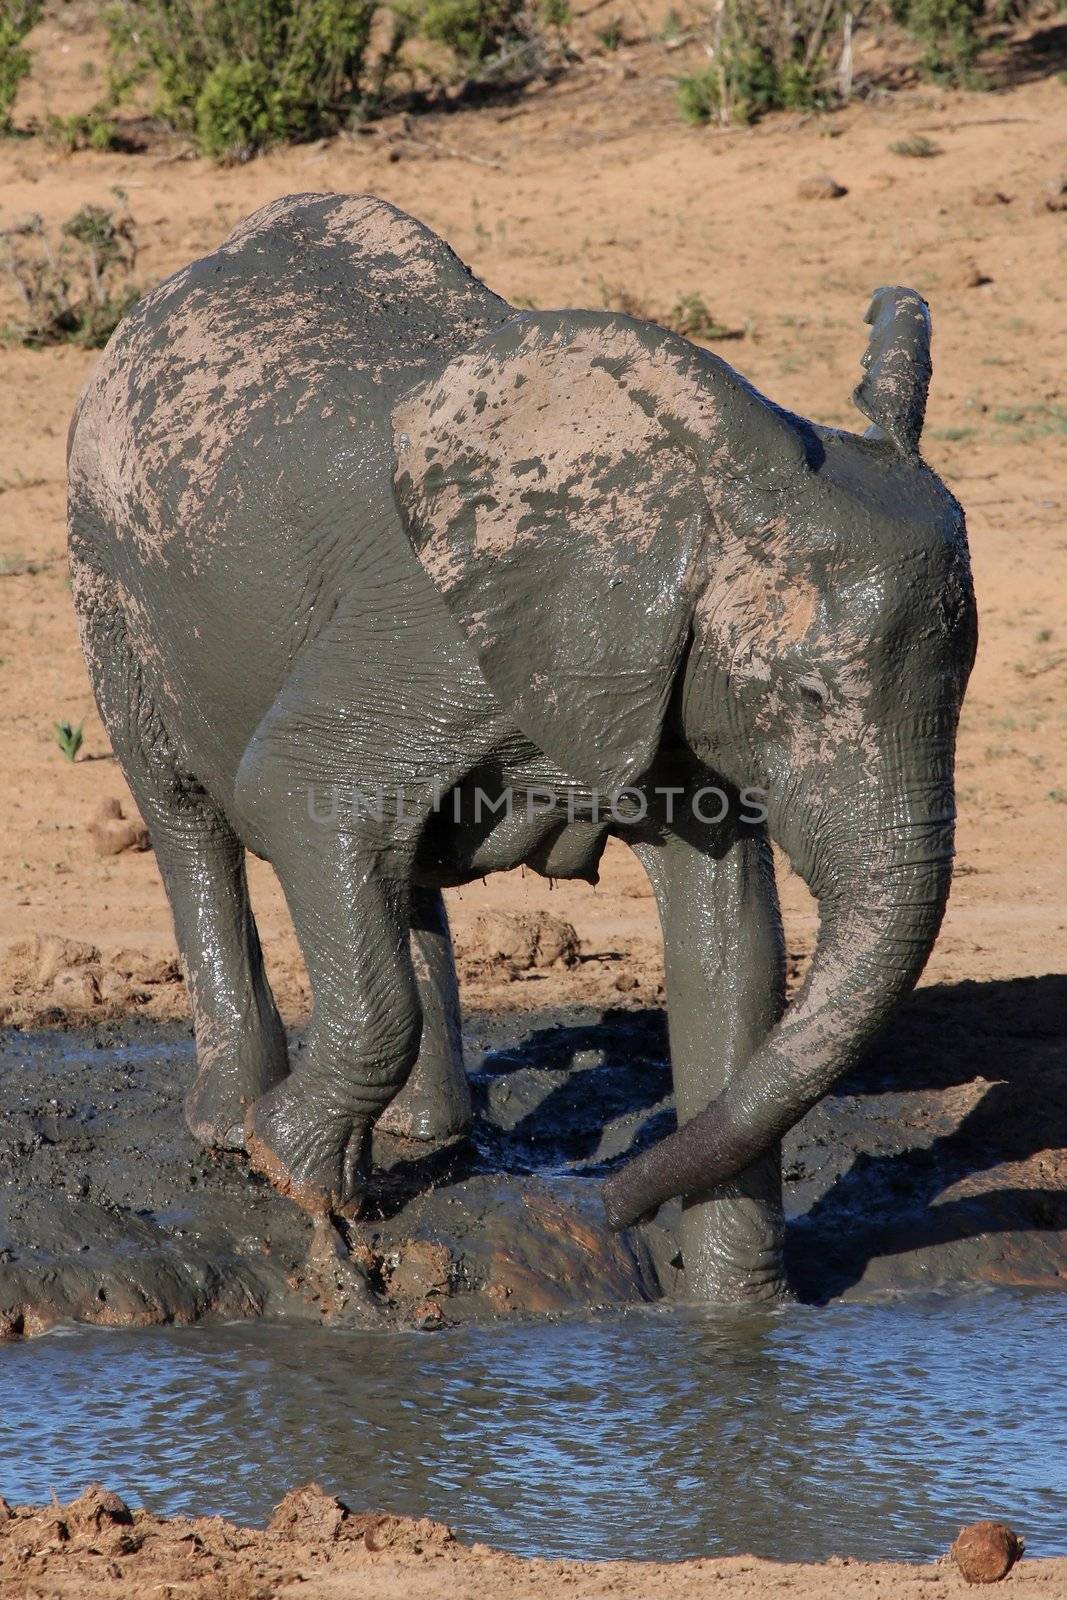 Elephant Mud Bathe by fouroaks